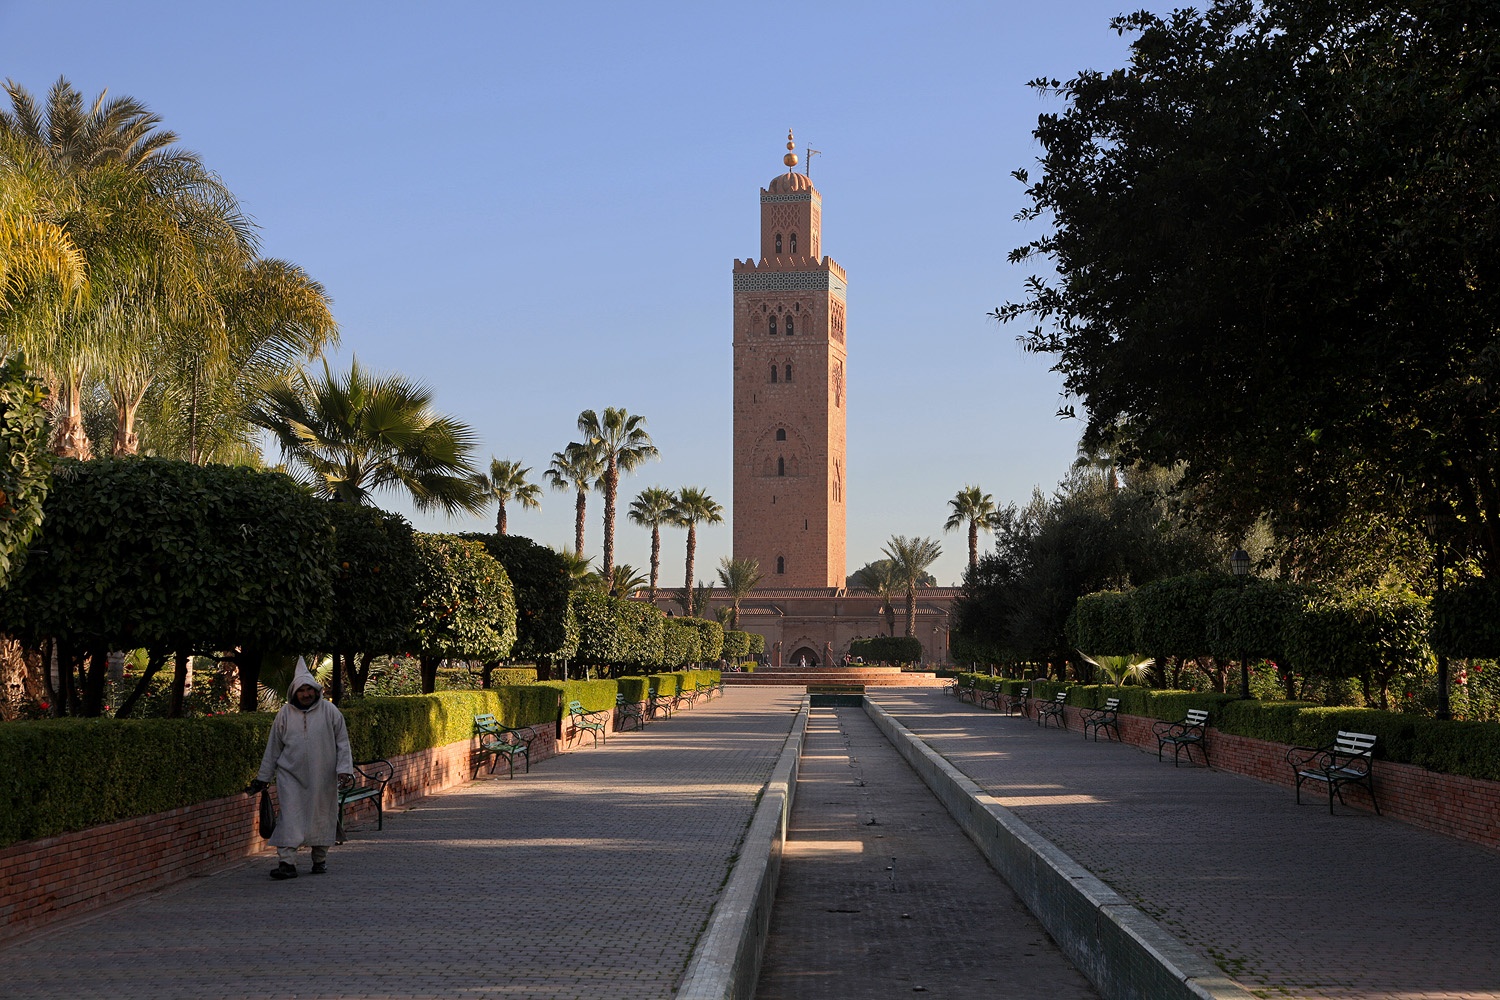 bill-hocker-??park-marrakech-morocco-2012